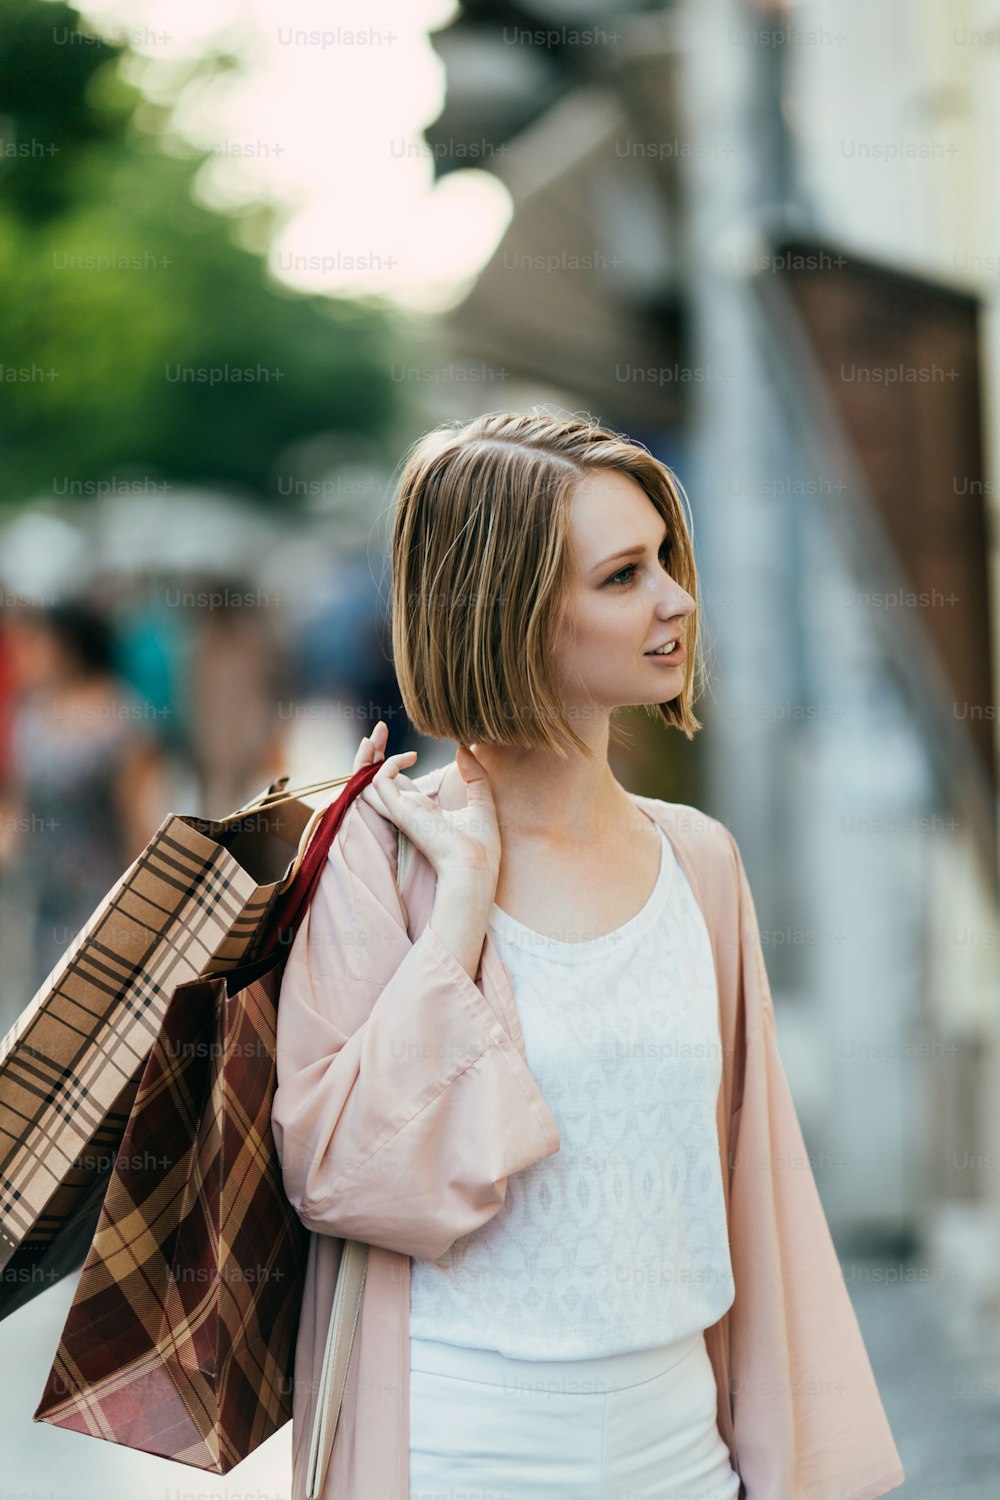 街の通りに立って店先を見ているショッピングバッグを持った美しくファッショナブルな若い女性